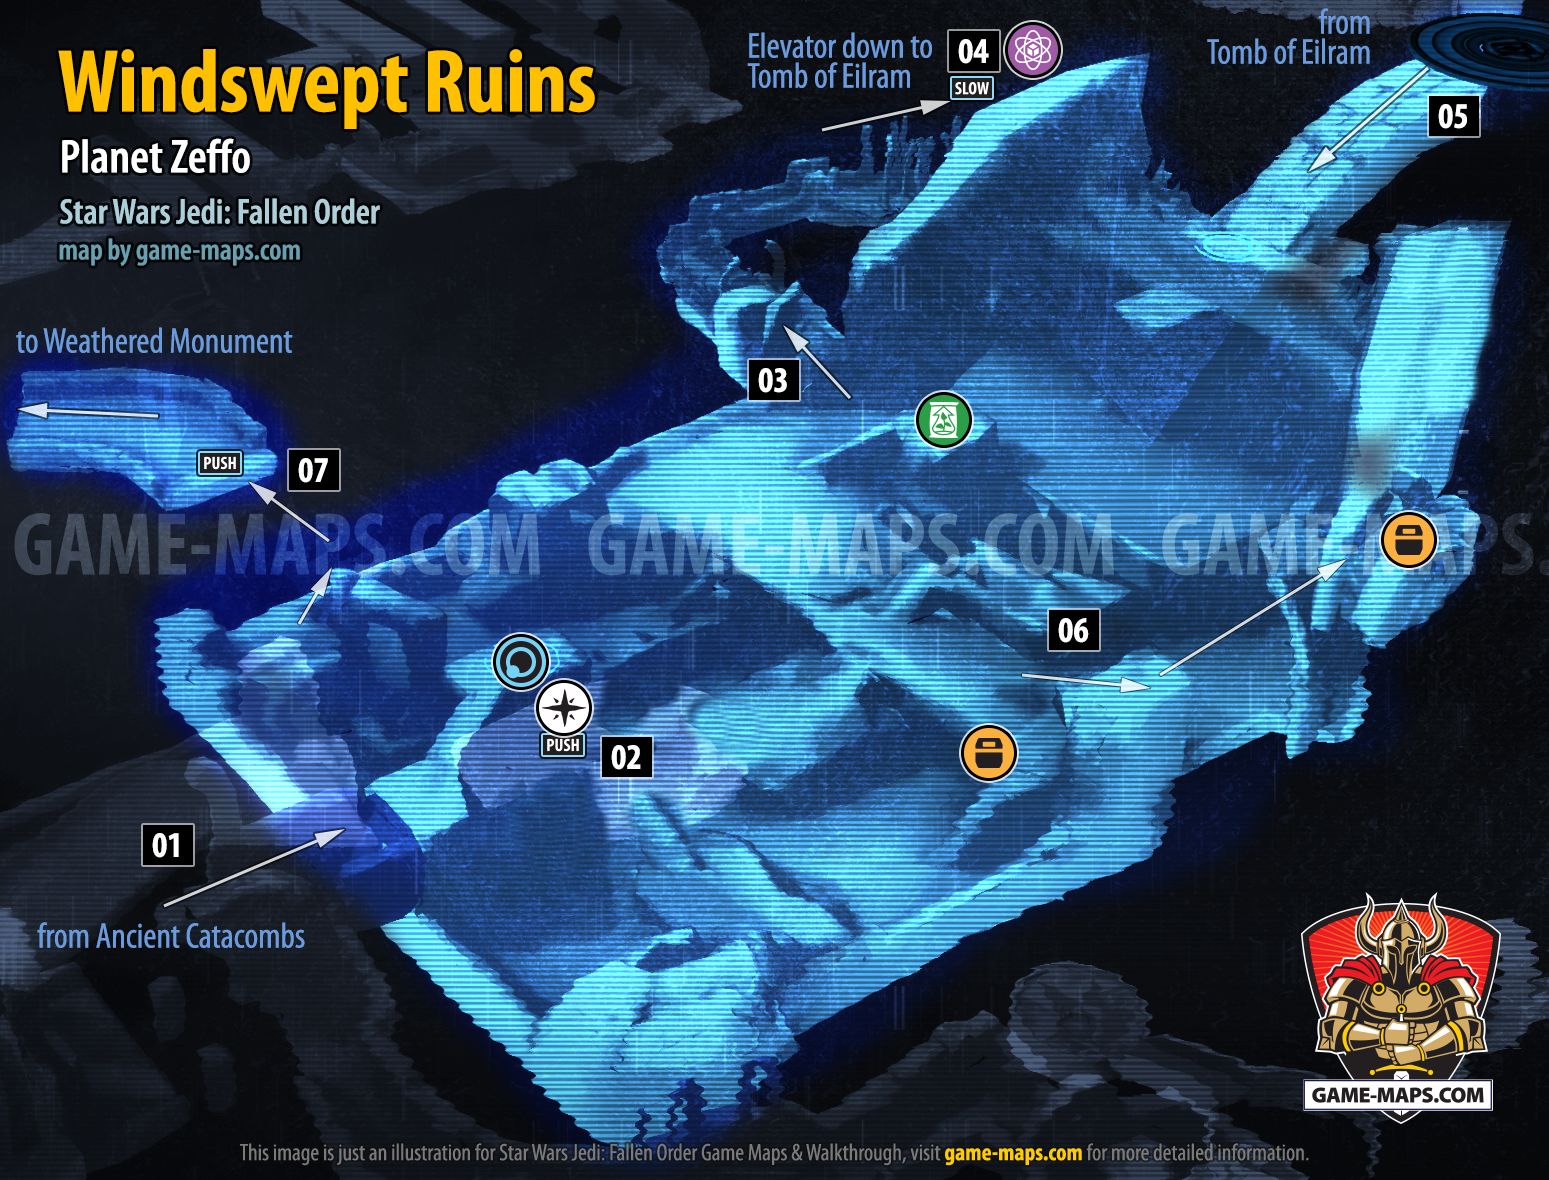 Windswept Ruins Map, Planet Zeffo for Star Wars Jedi Fallen Order